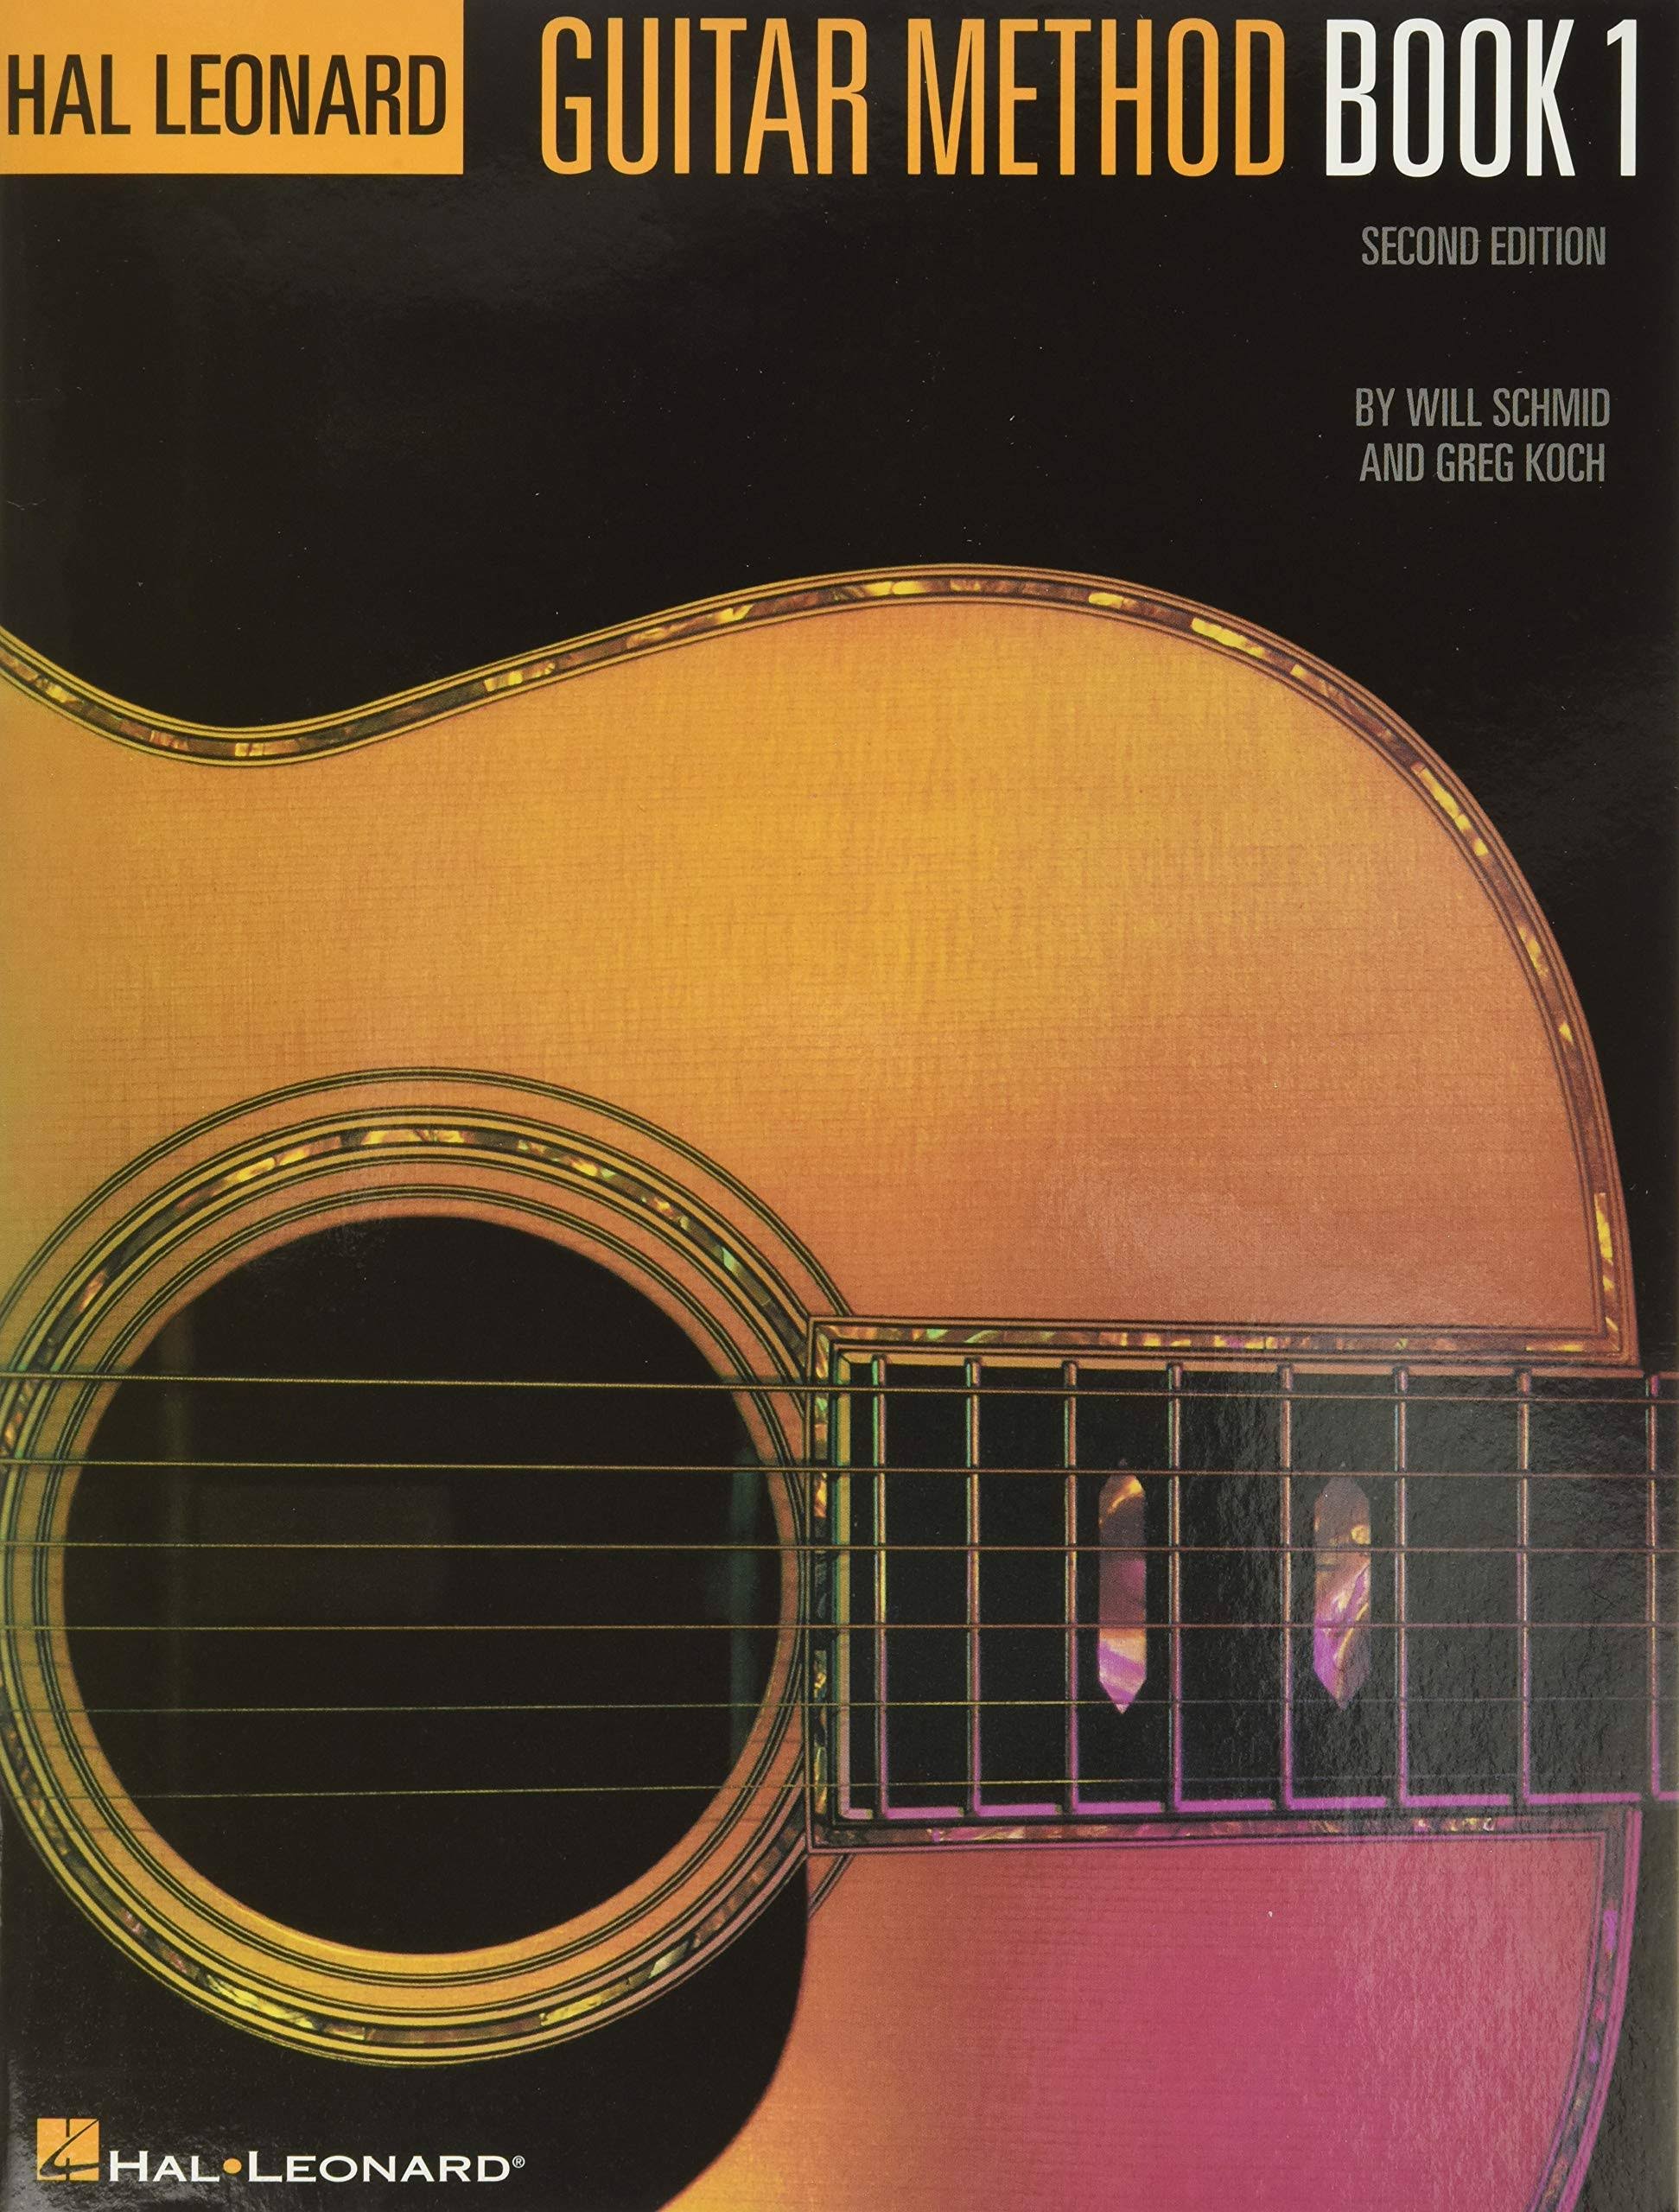 Hal Leonard Guitar Method Book 1, Second Edition - Will Schmid, Greg Koch